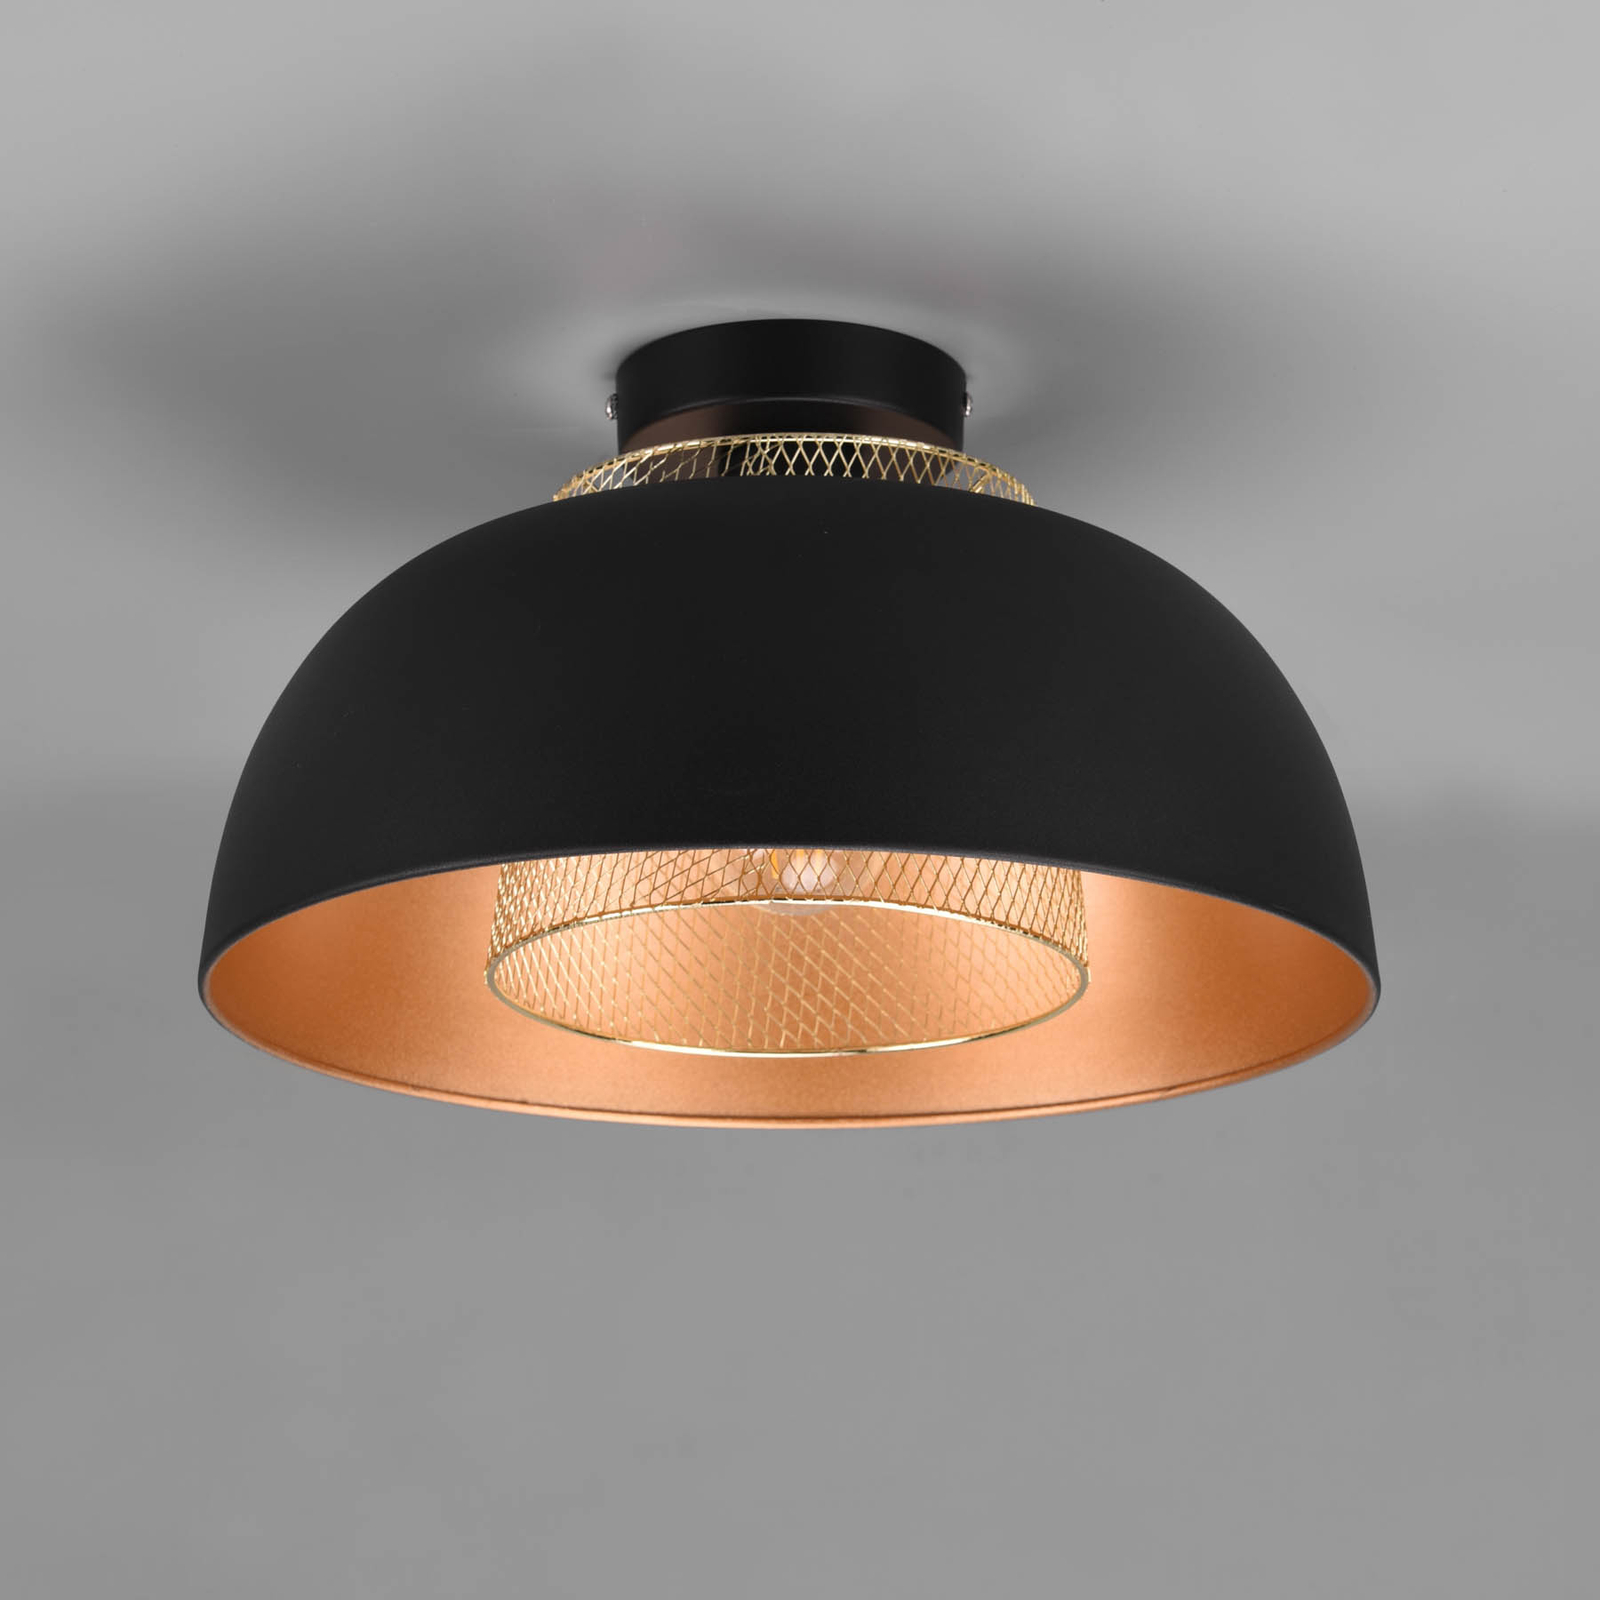 Plafondlamp Punch, zwart/goud, Ø 35 cm